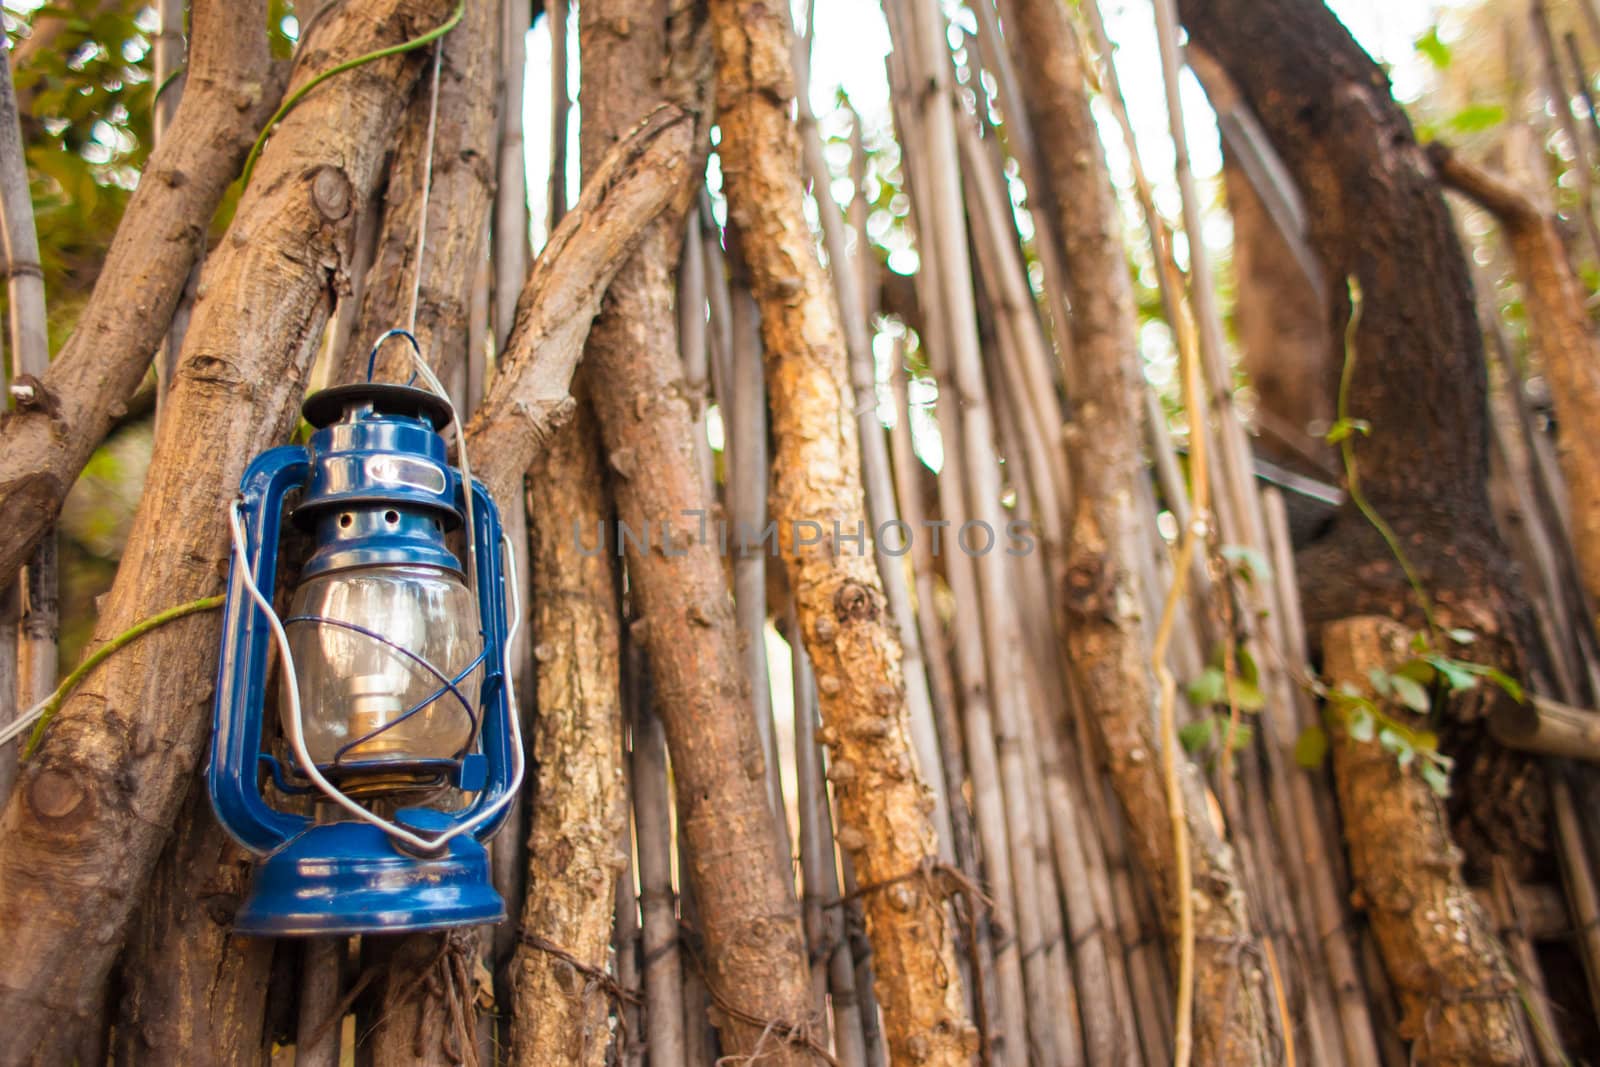 Lantern in African village by edan